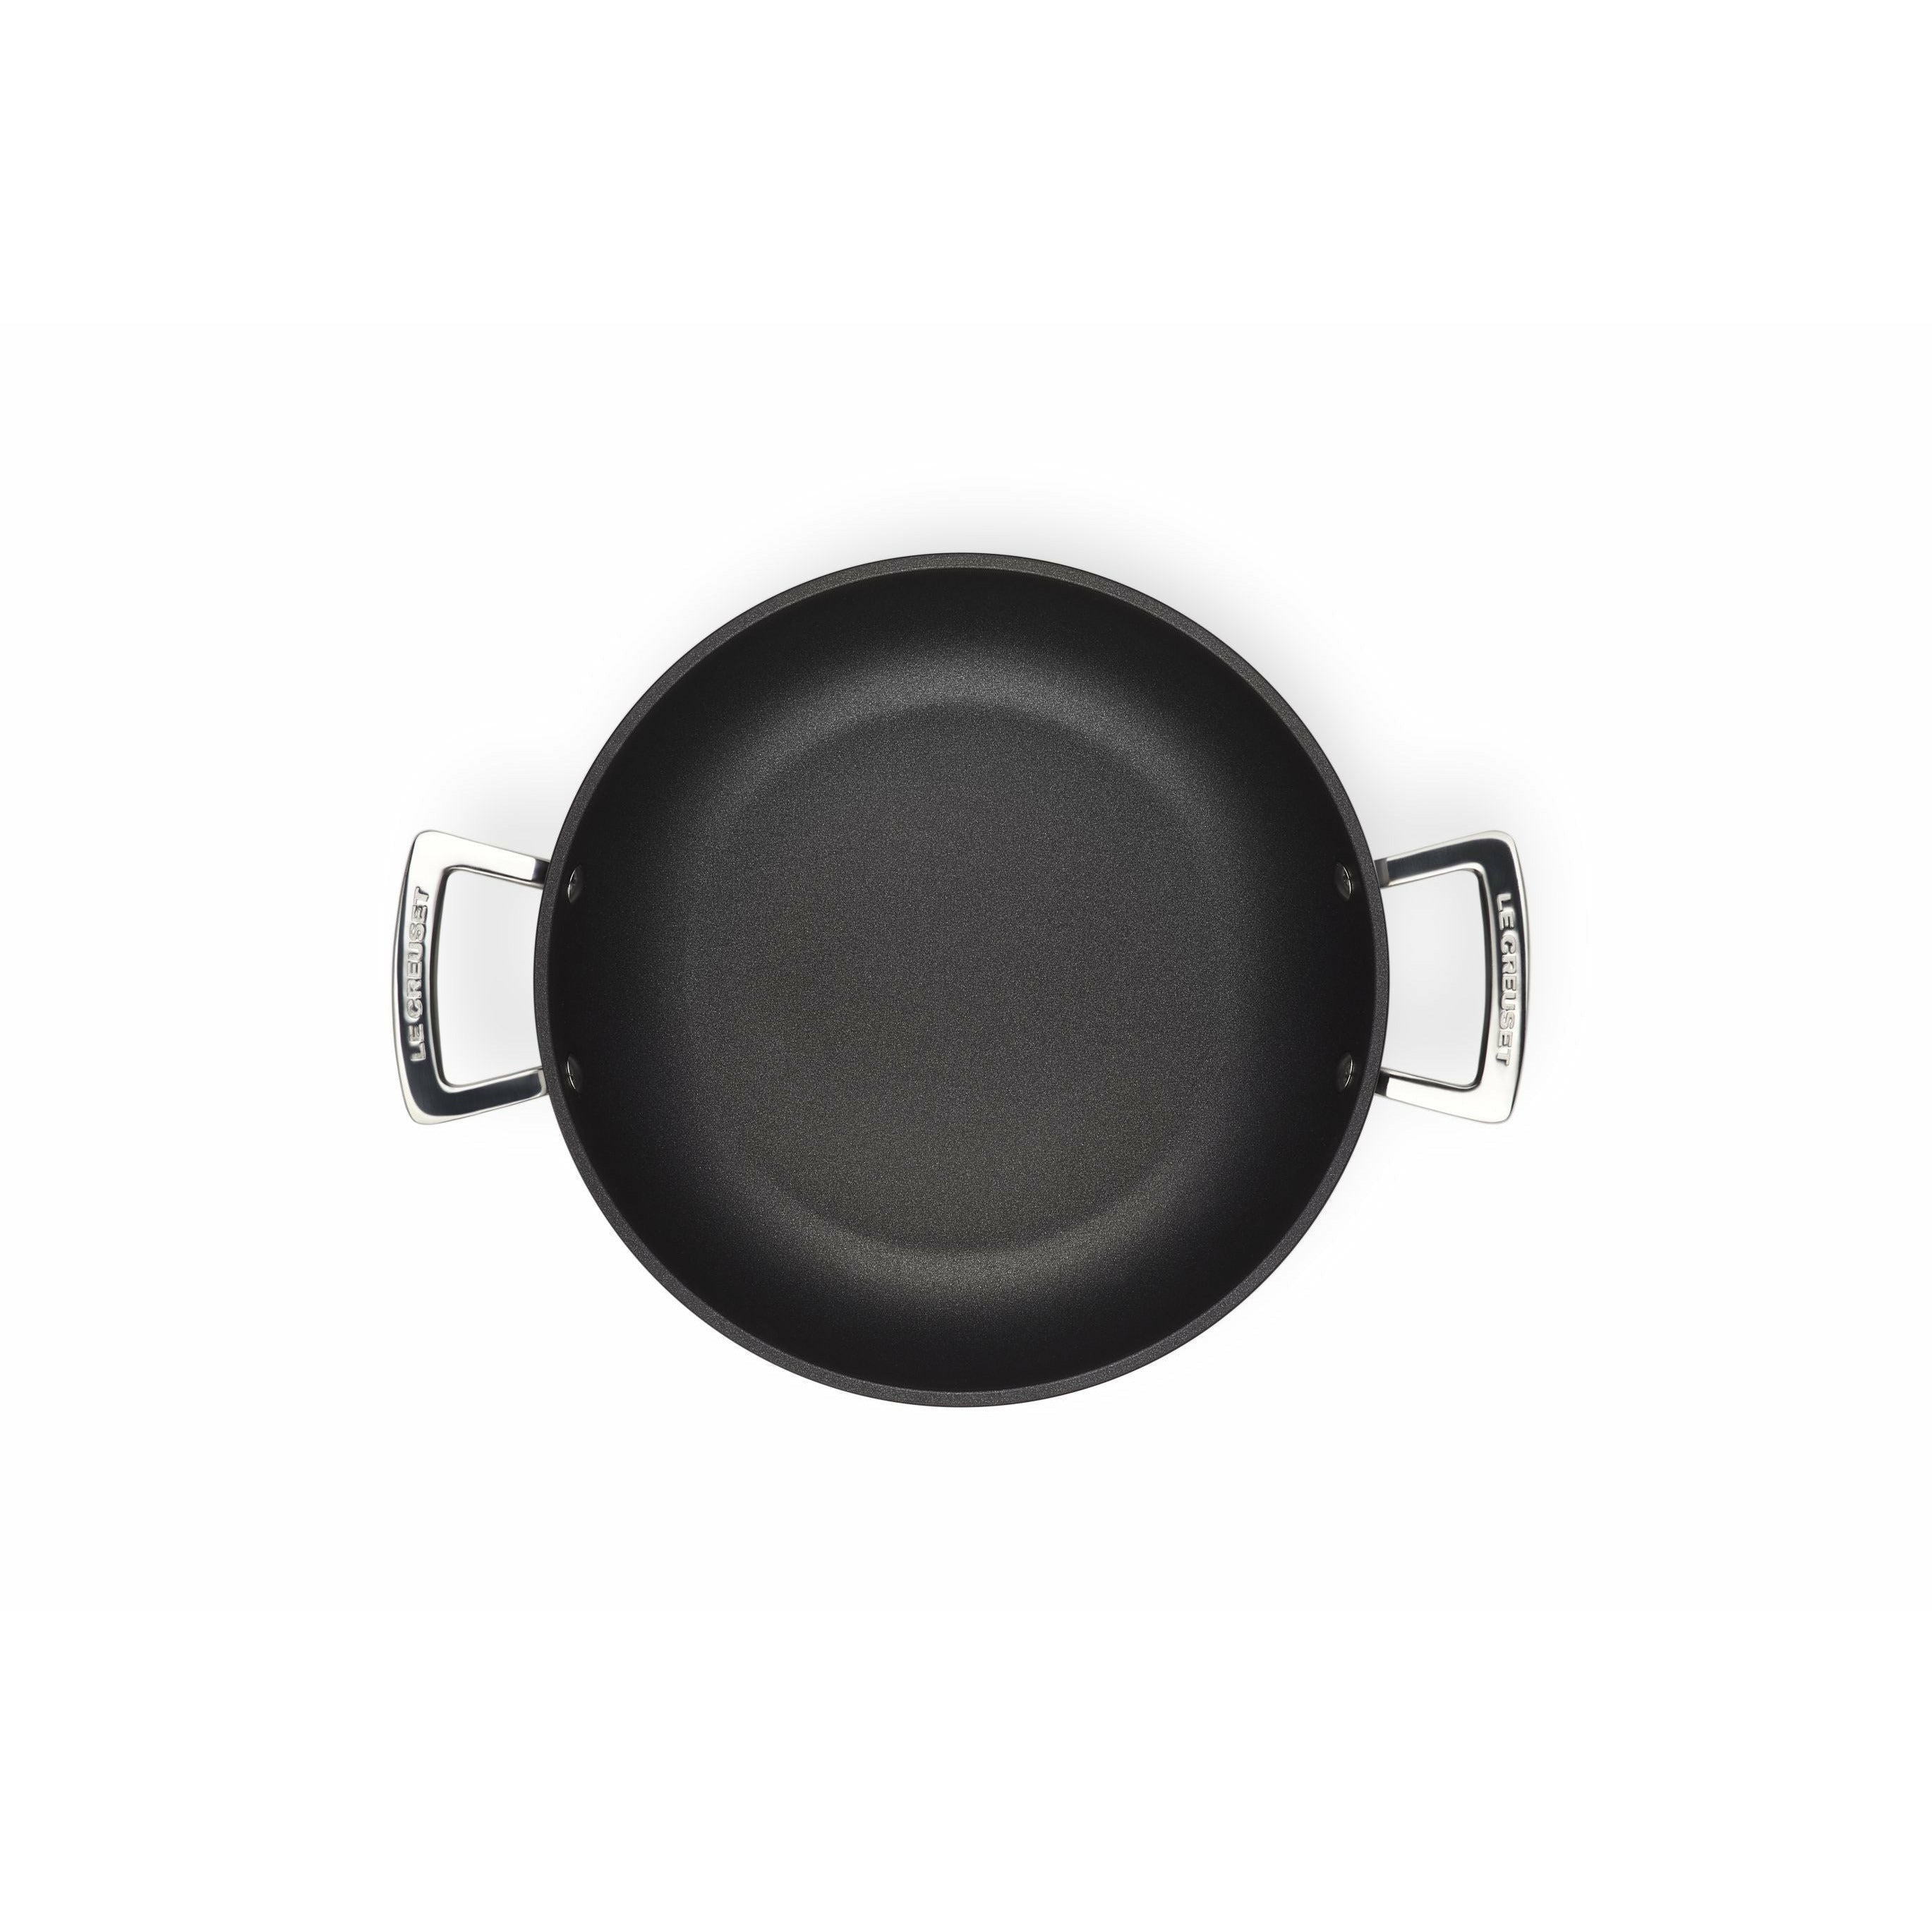 Le Creuset Saute Pot With Glass Lid härdad non-stick, 26 cm